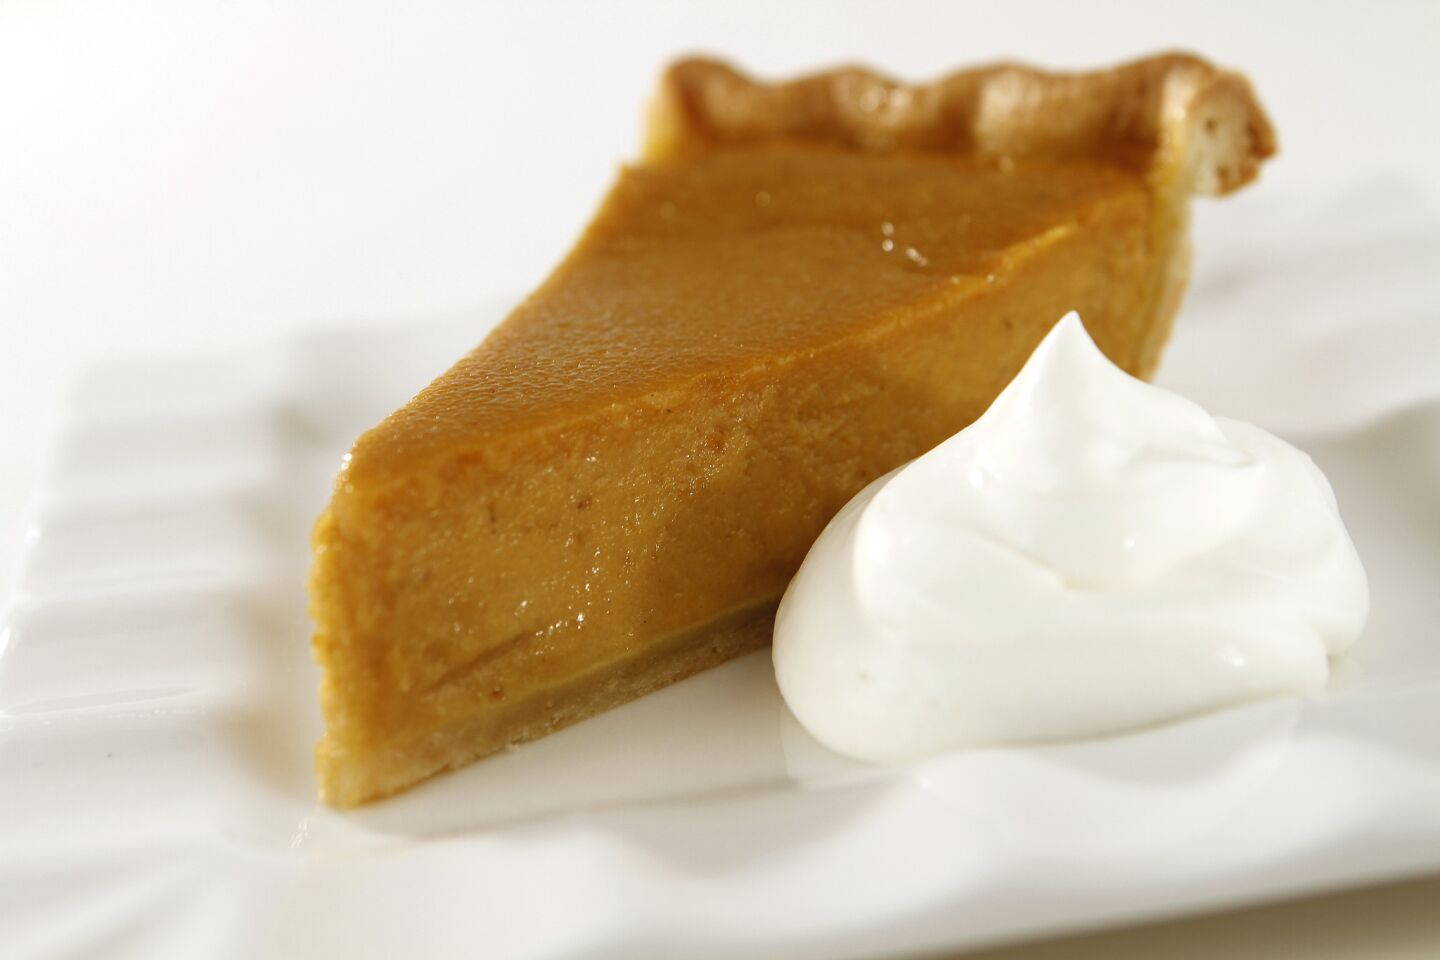 Here's a recipe for a classic pumpkin pie.